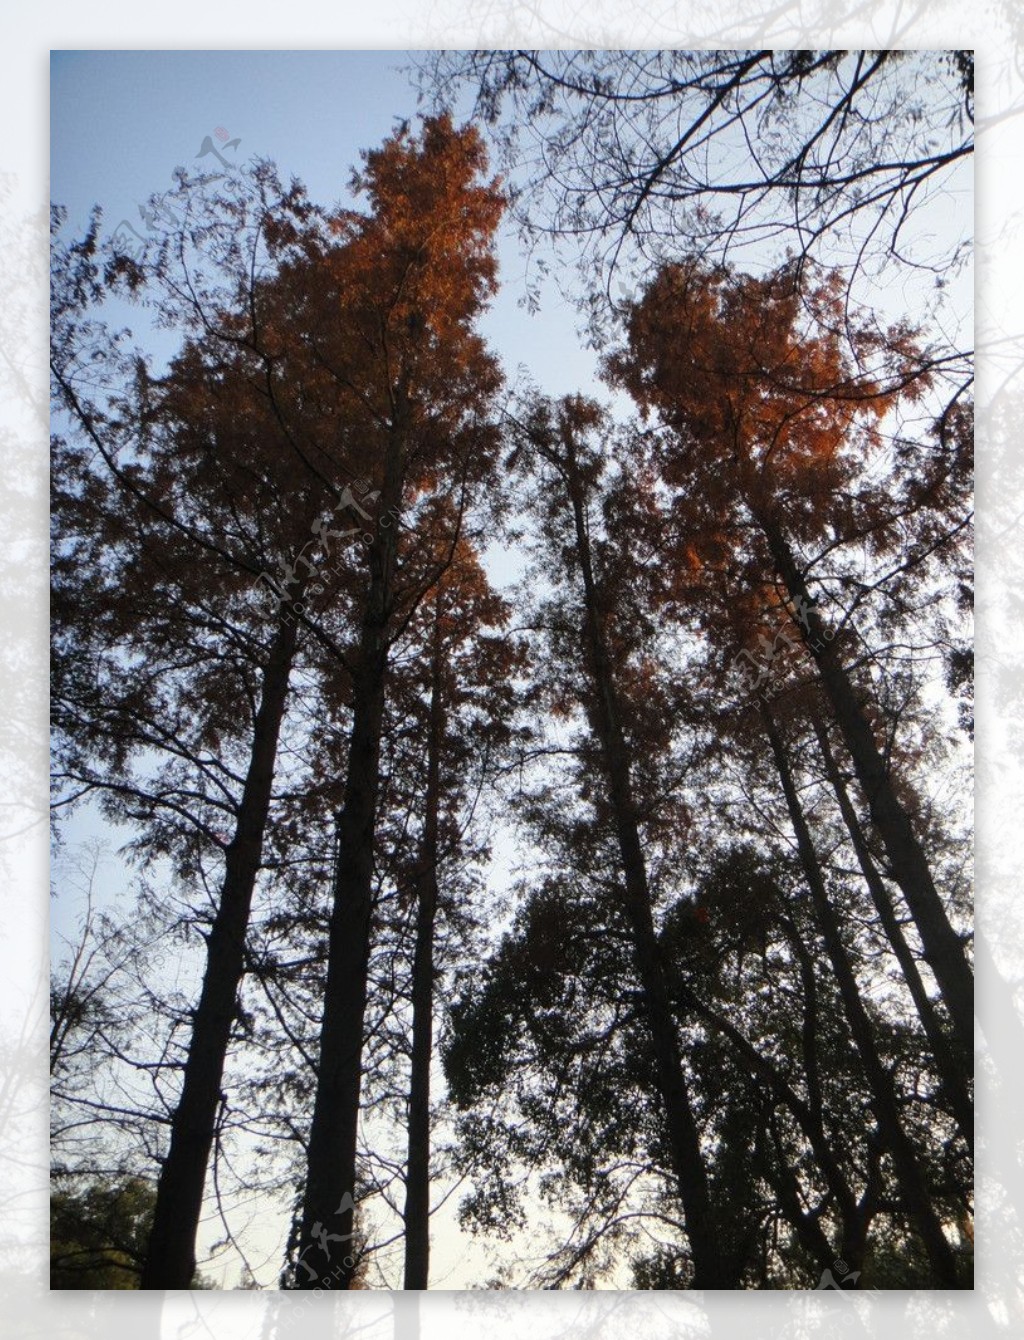 树林图片